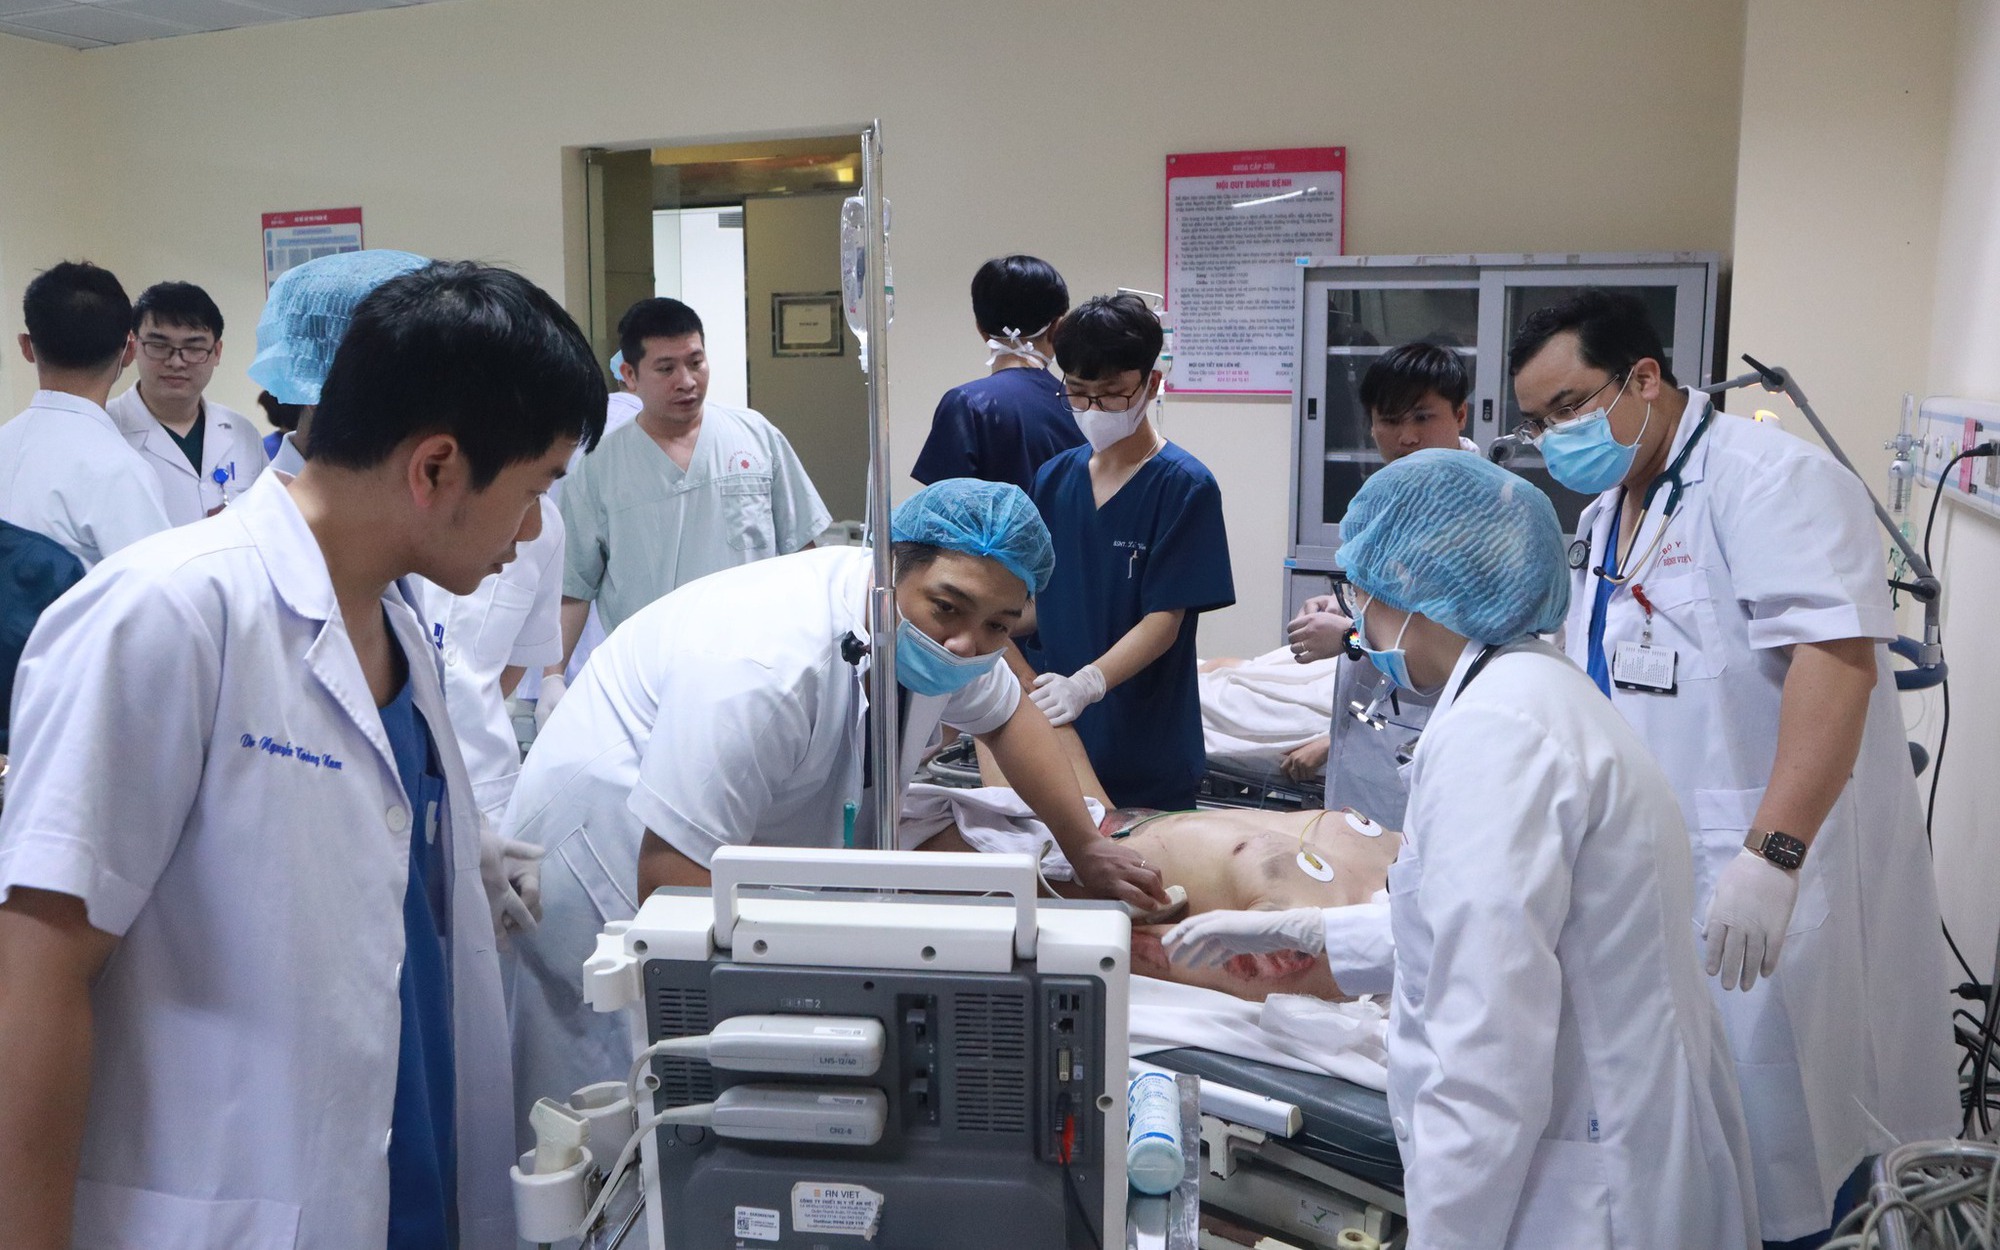 Nguy cơ rối loạn chỉ đạo tuyến trong hệ thống y tế nếu Hà Nội 'quản' bệnh viện trung ương